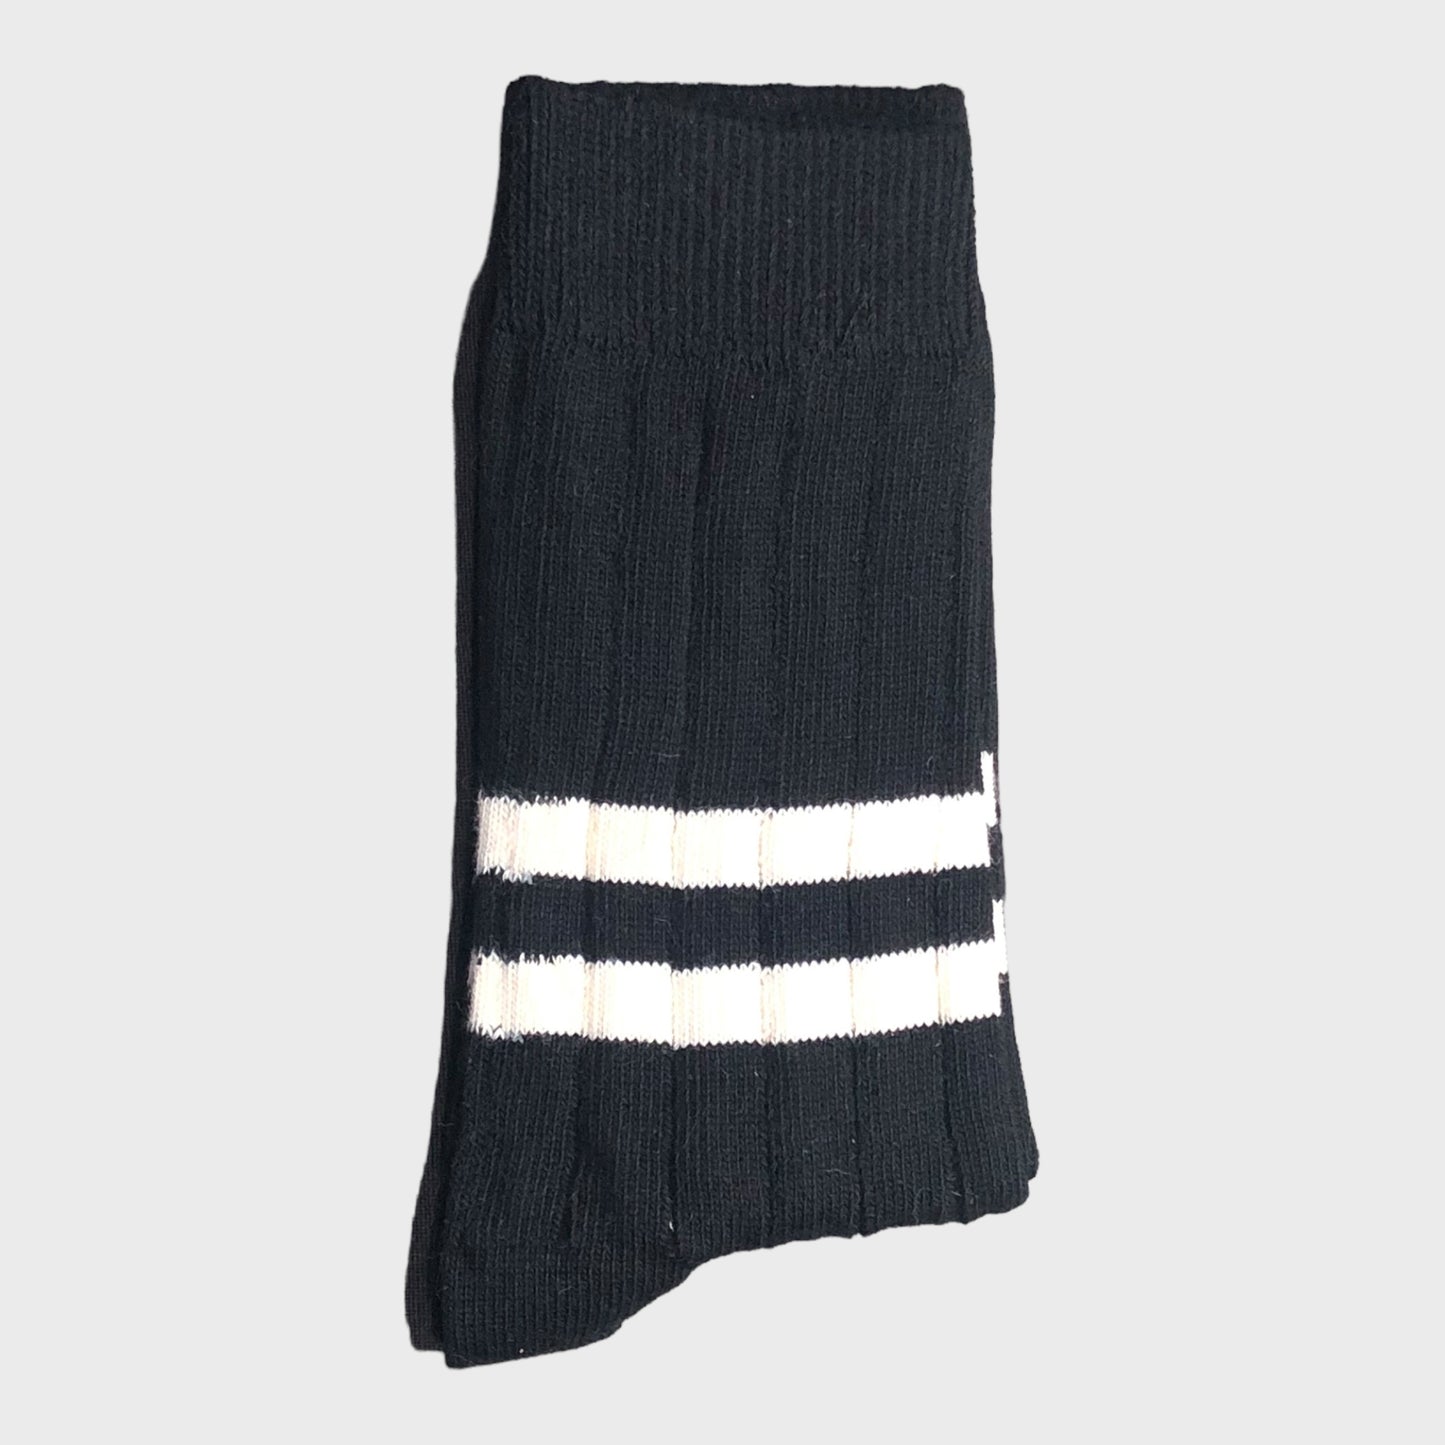 Heritage 9.1 - Black Double White Stripe Socks